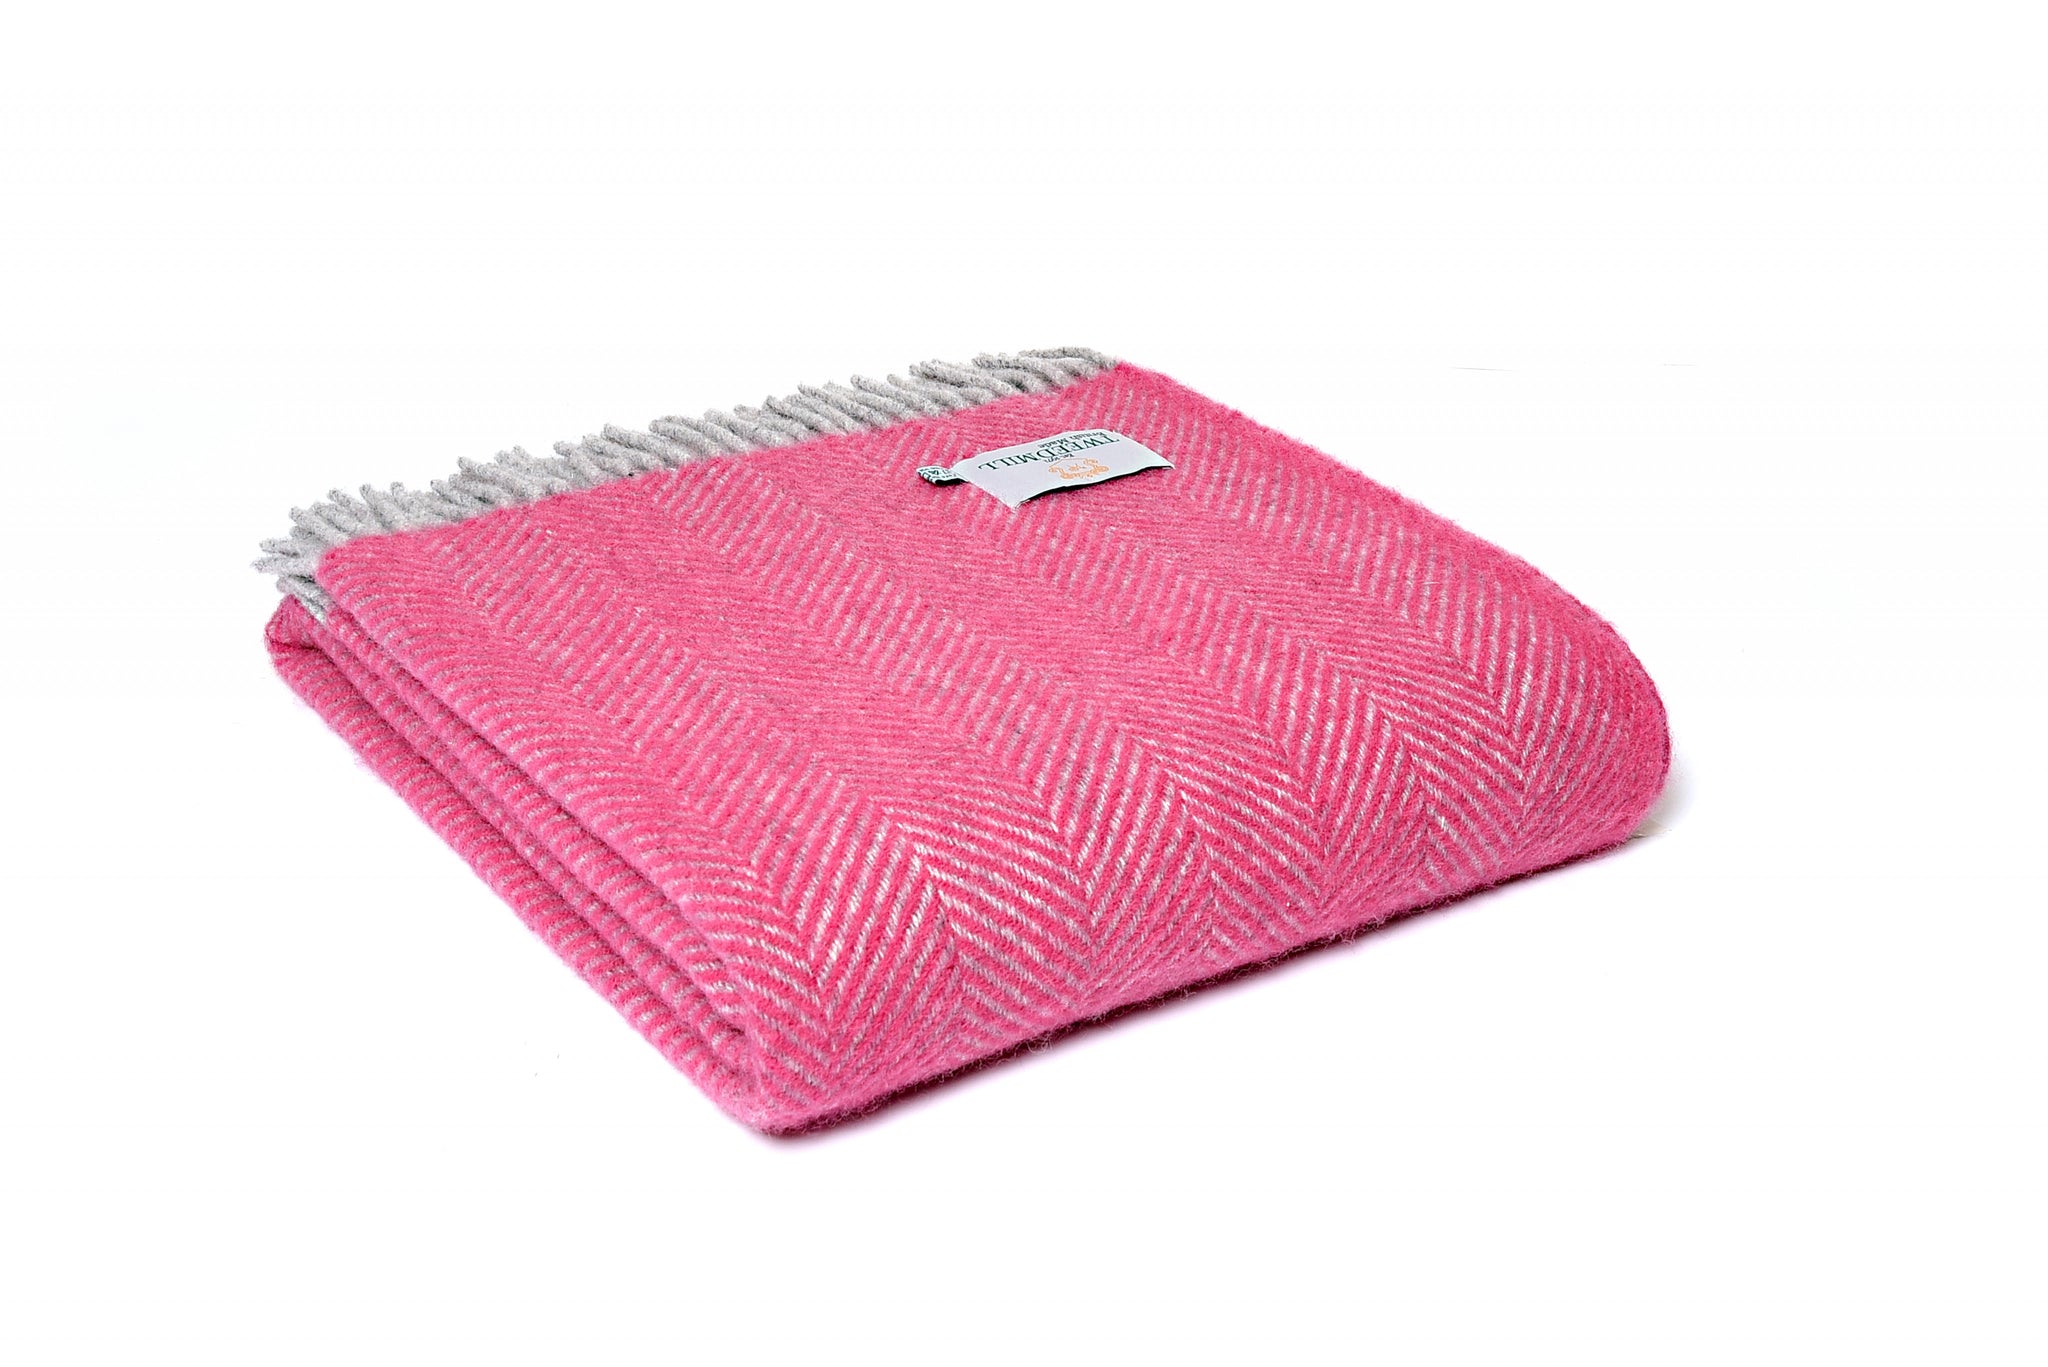 Brand new Tweedmill Pink and Silver herringbone Wool throw blanket